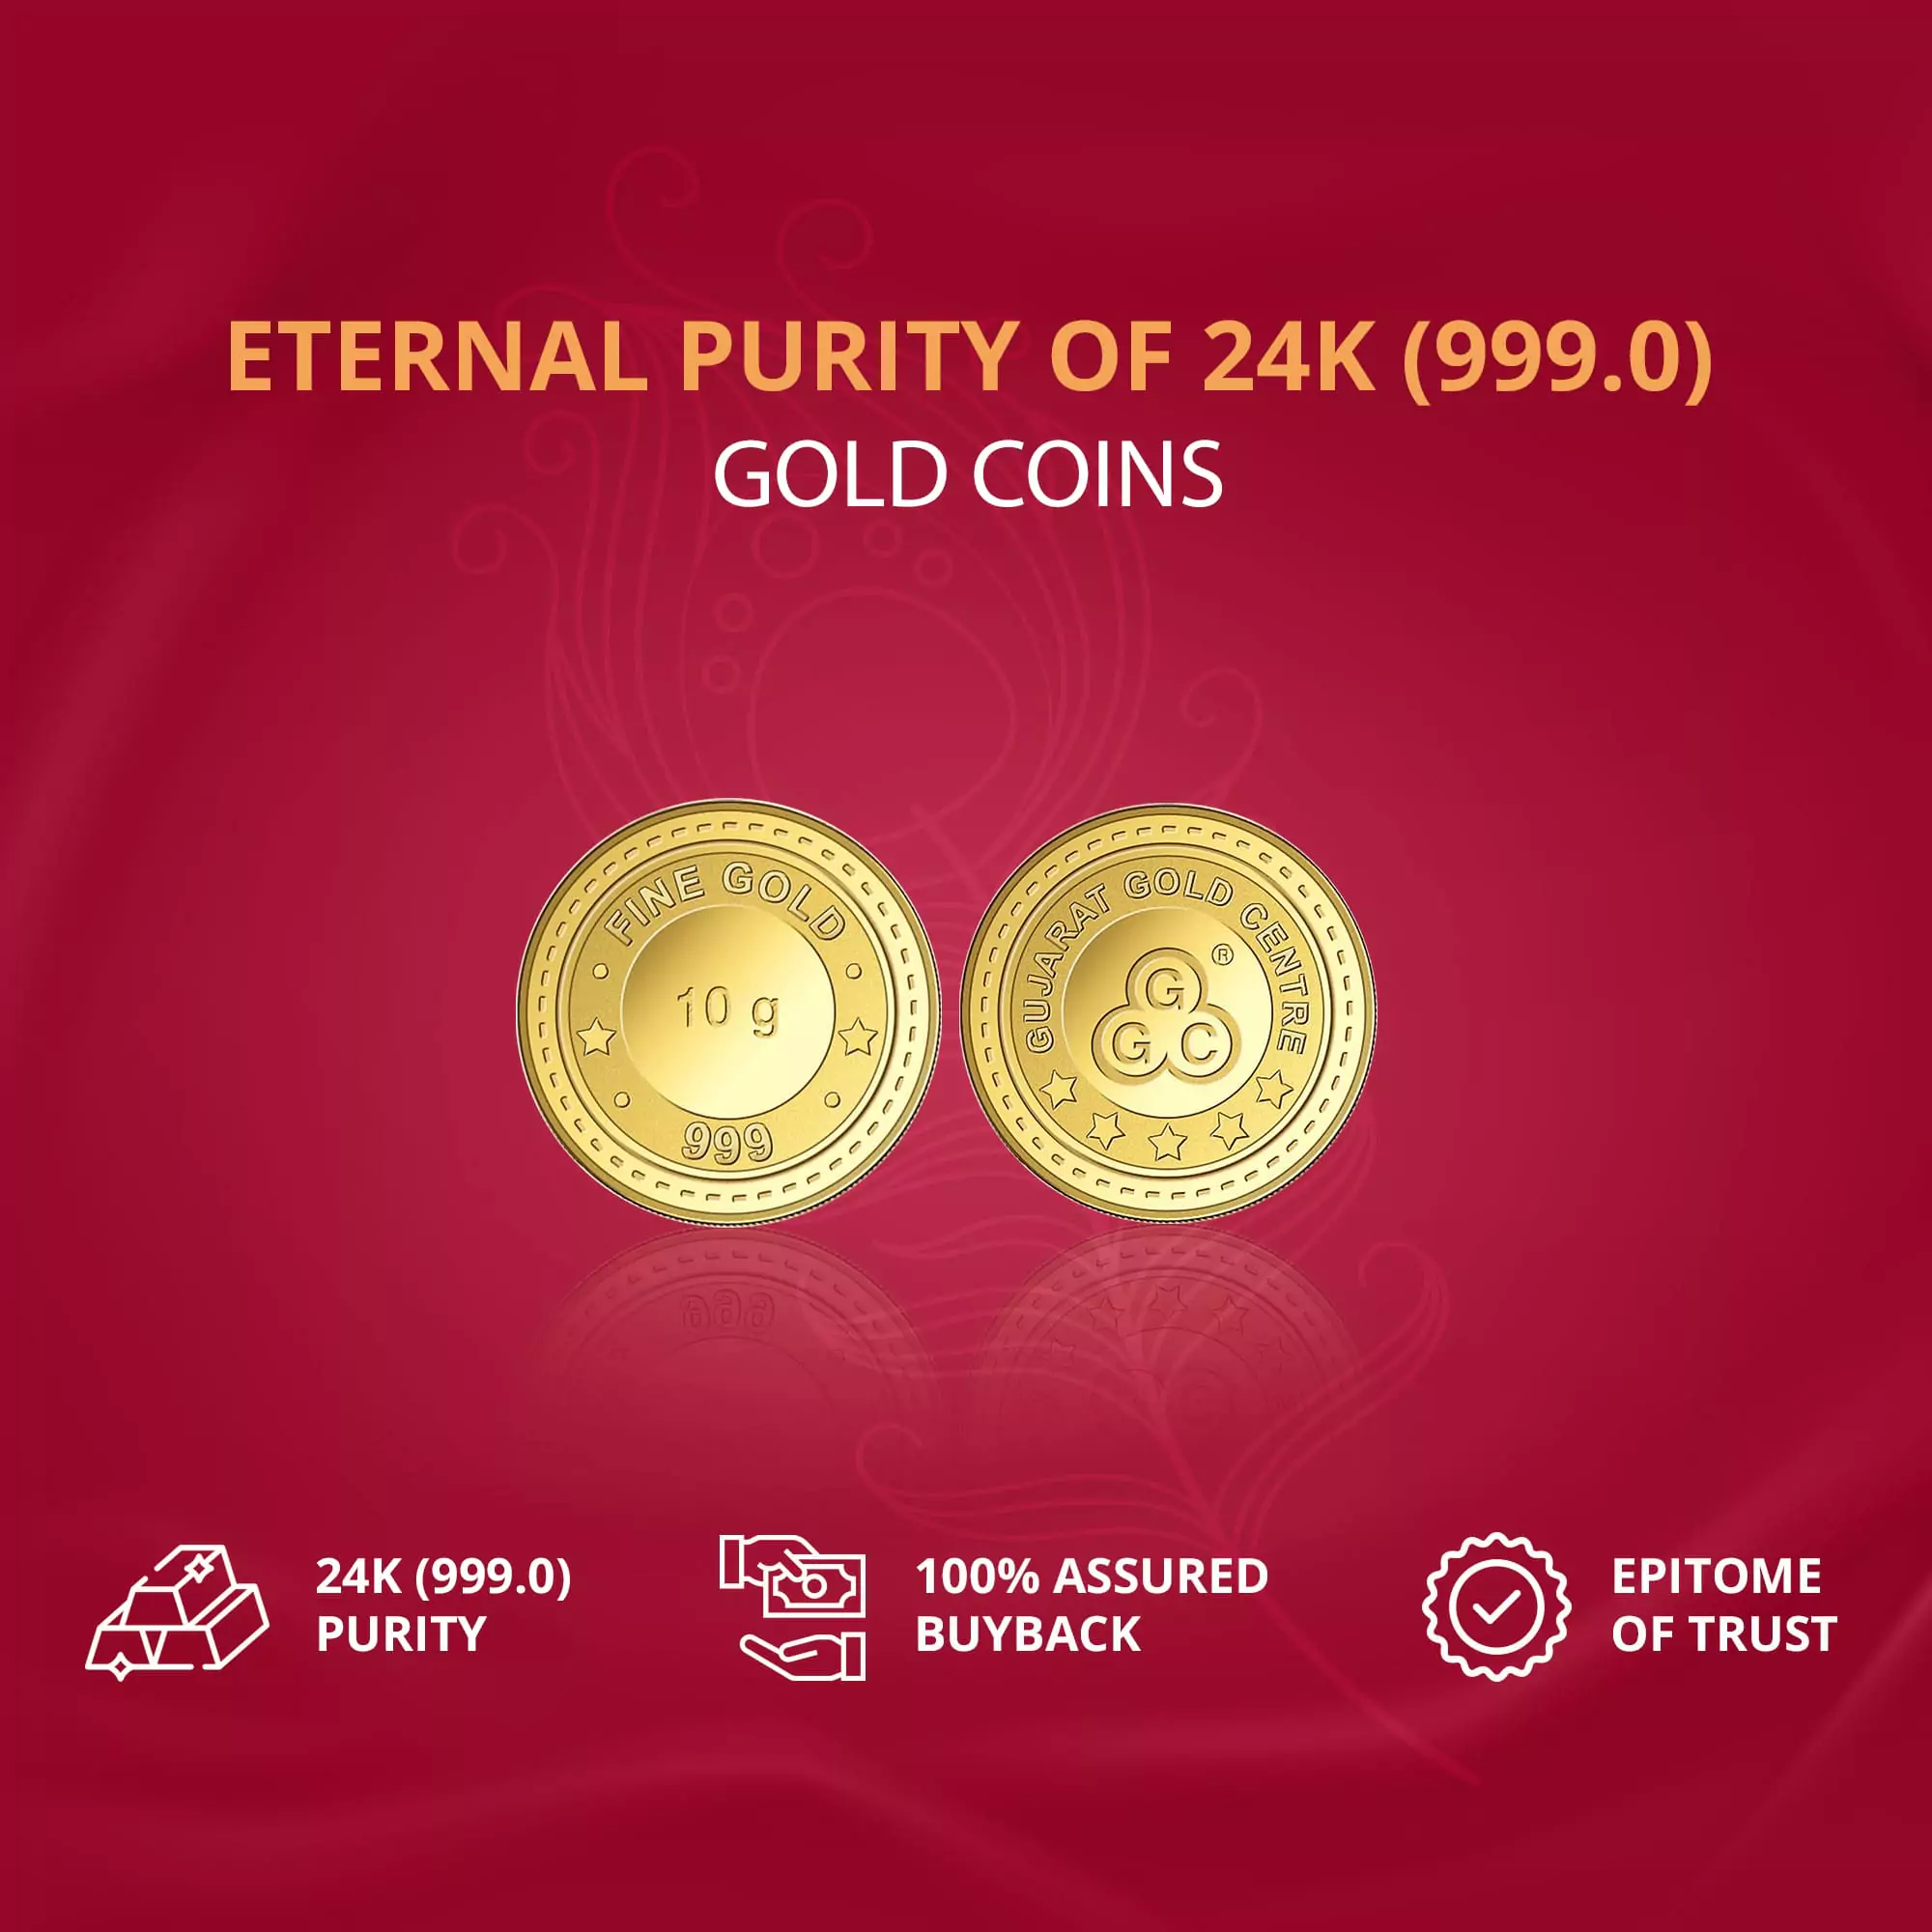 10gm GGC 24K Gold Coin